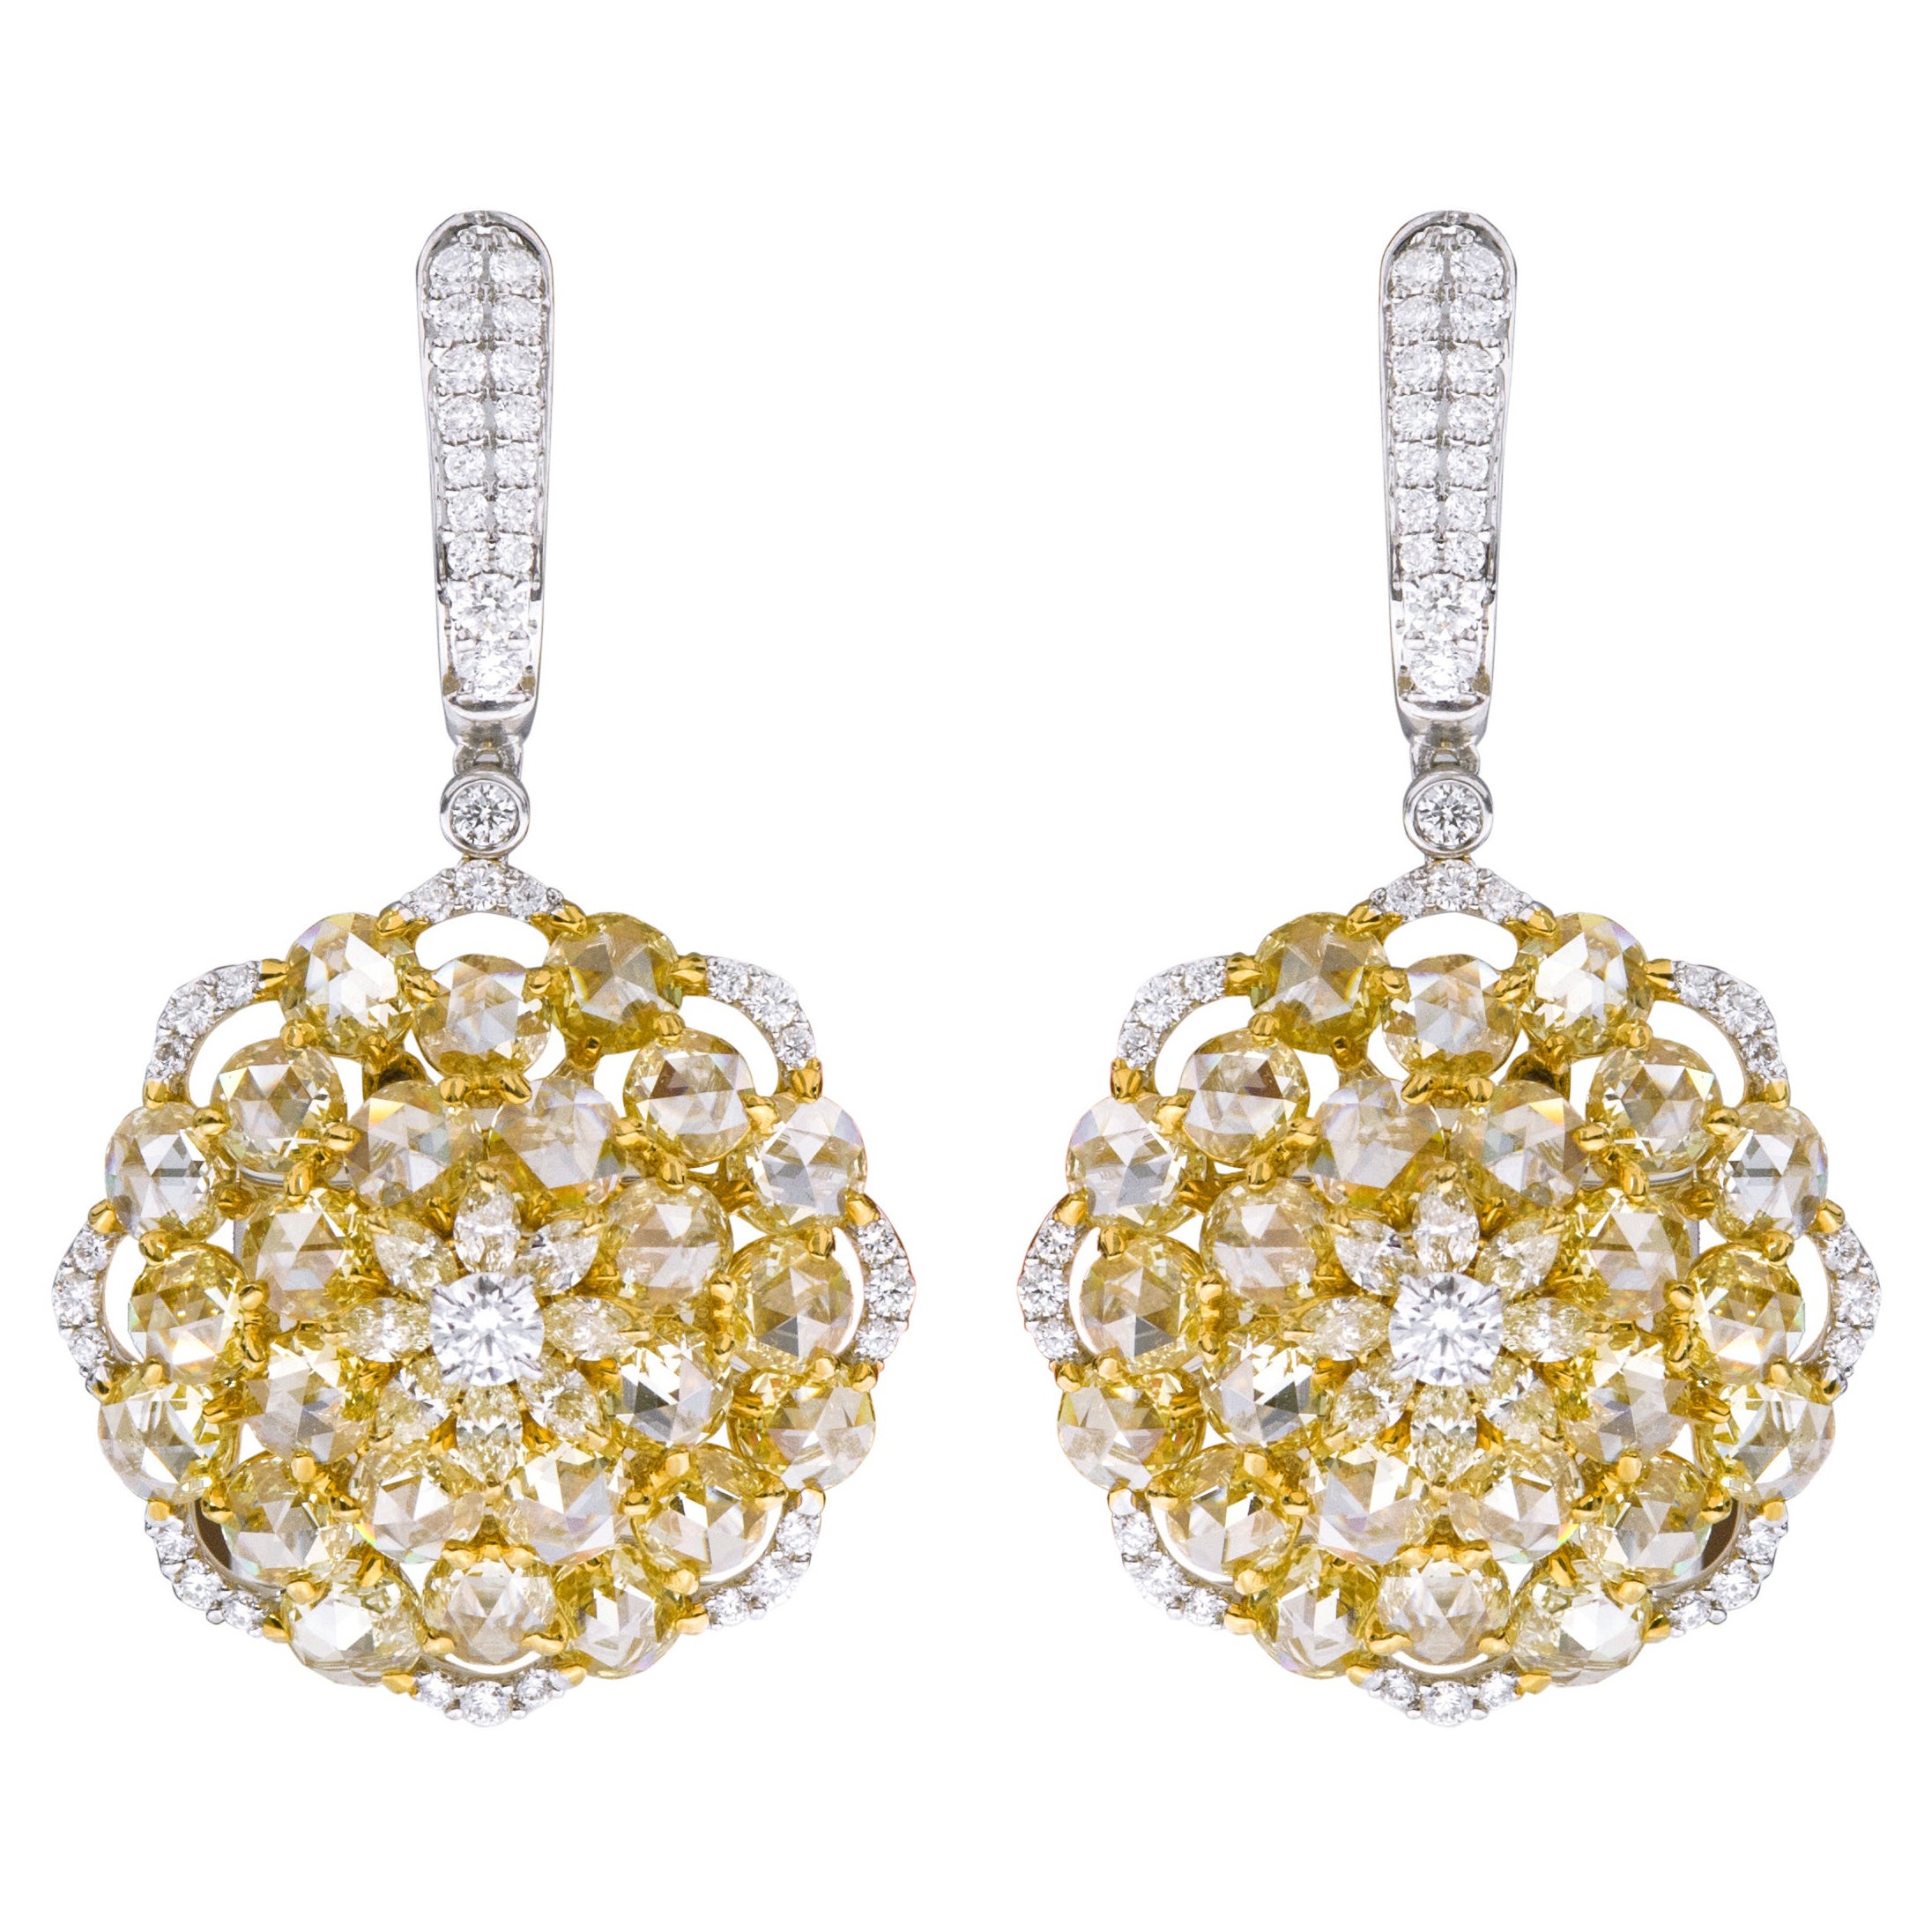 Boucles d'oreilles cocktail en or 18 carats avec diamants jaunes et blancs de 8,69 carats